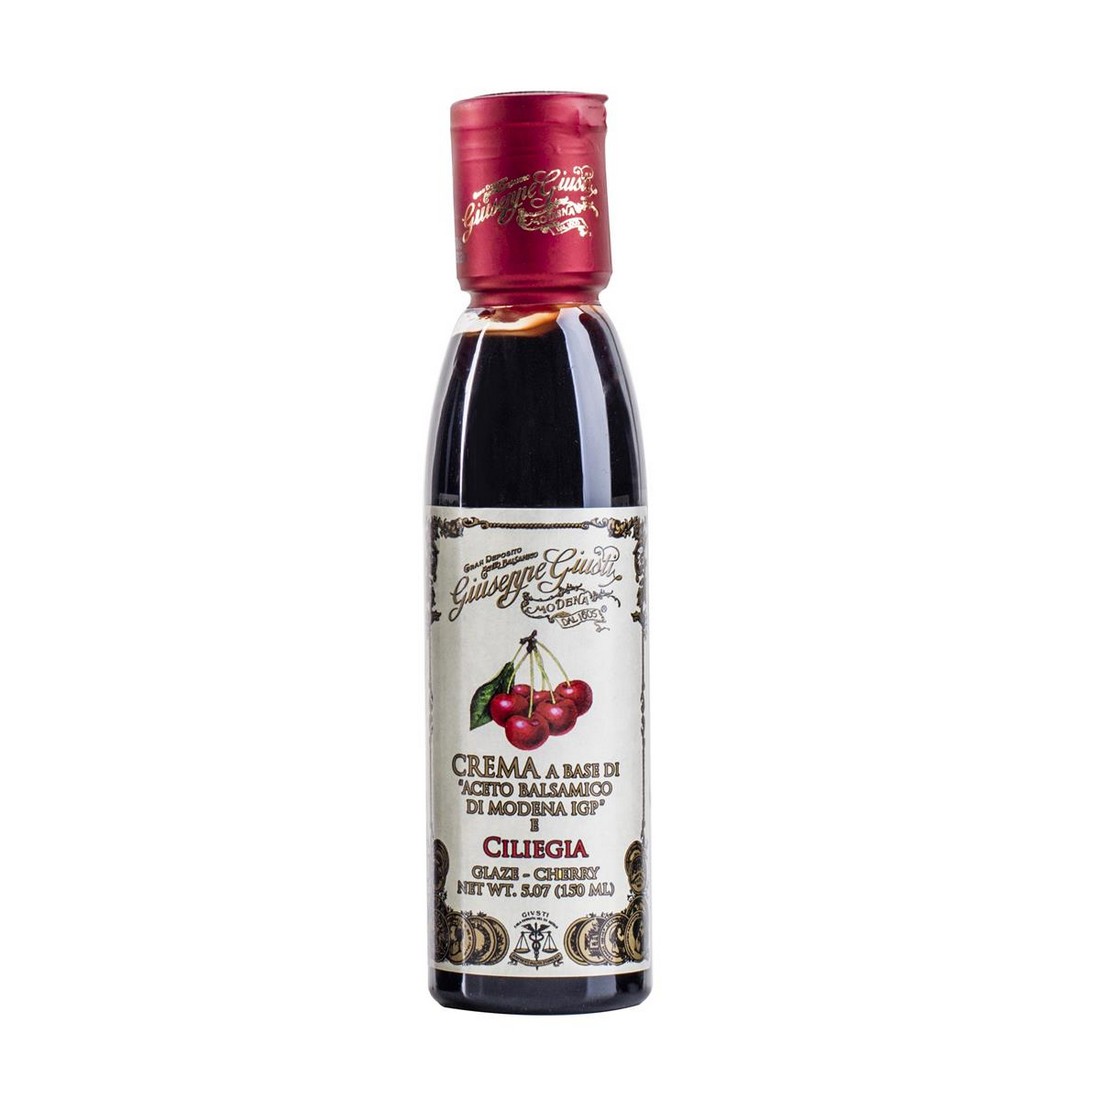 Cream based on balsamic vinegar of Modena PGI - Cherry - 150 ml